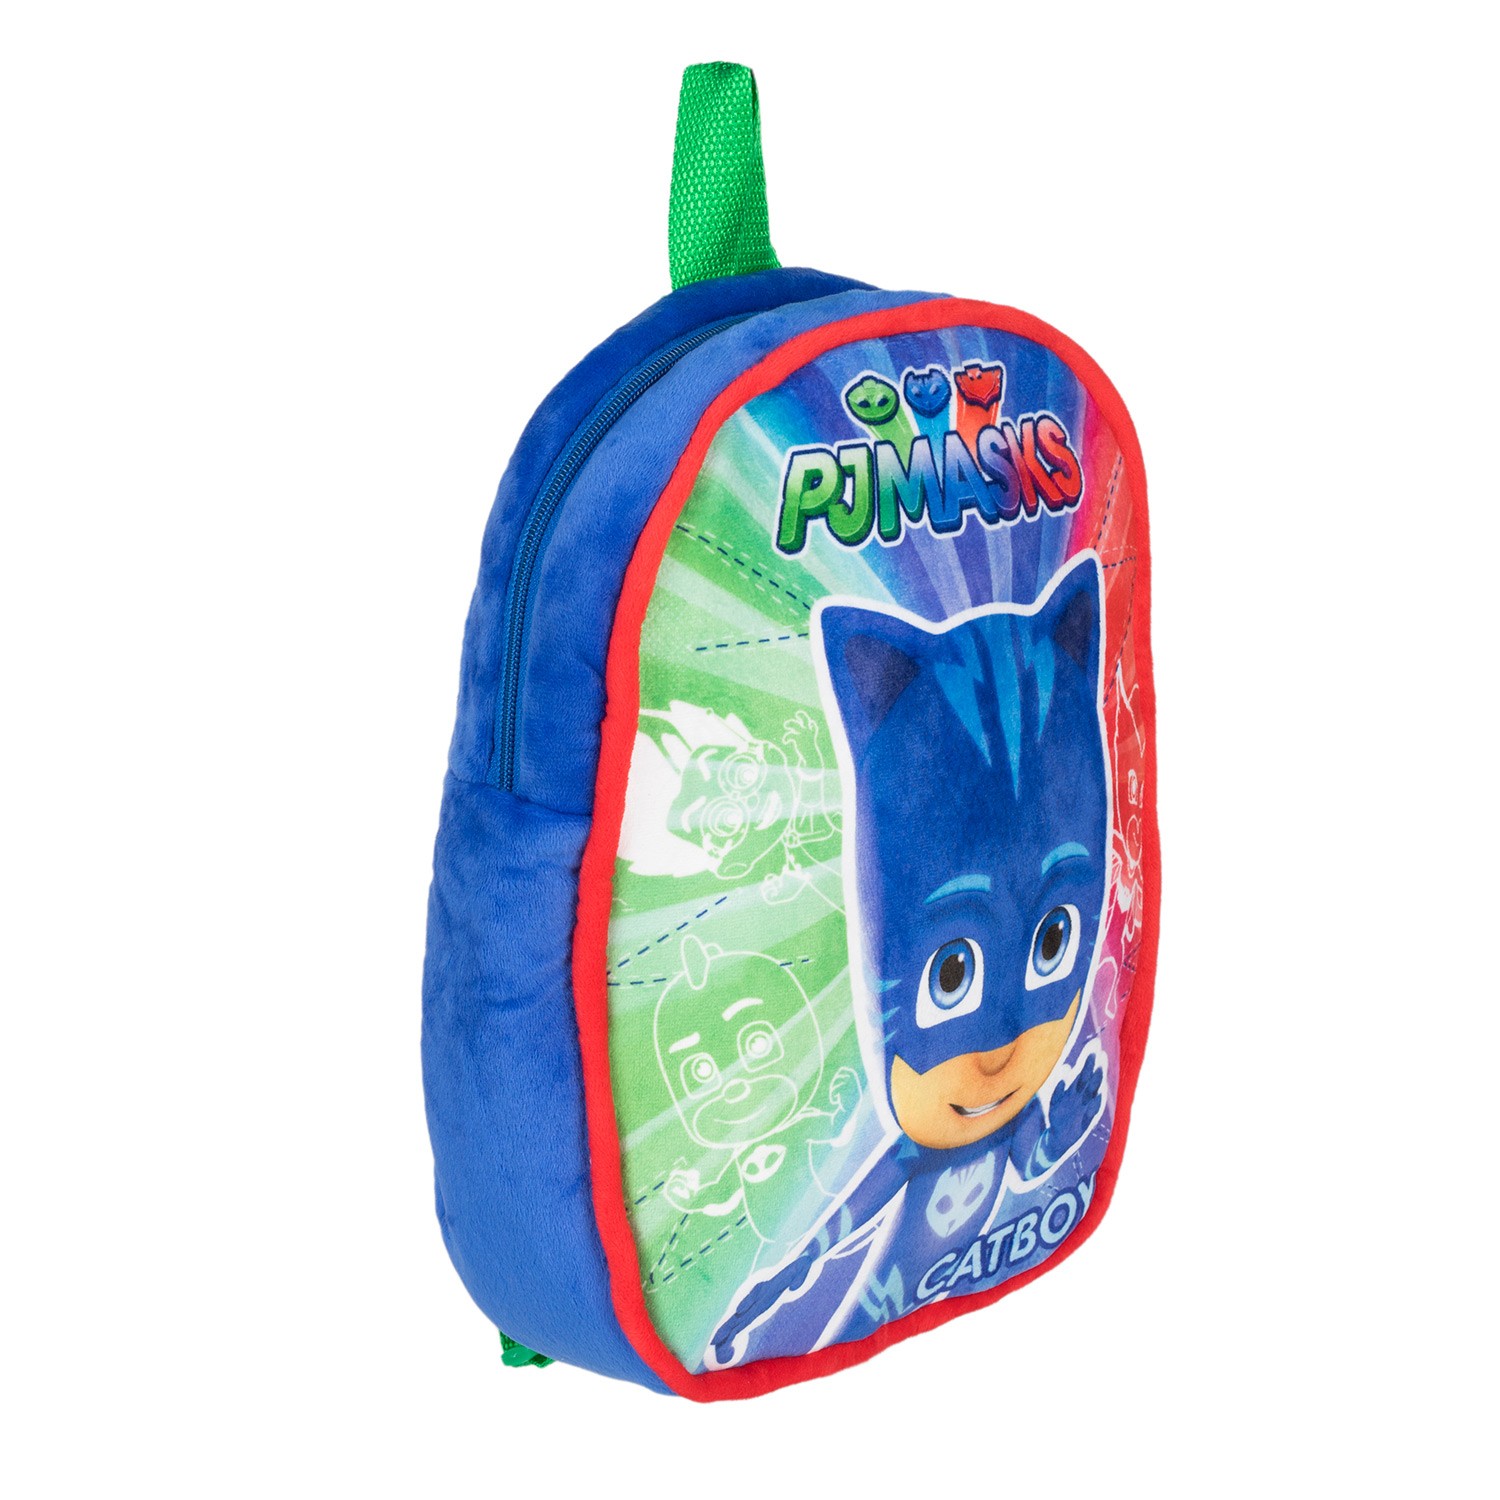 фото Рюкзак Герои в масках Рюкзачок плюшевый детский, синий, зеленый, красный Pj masks / герои в масках